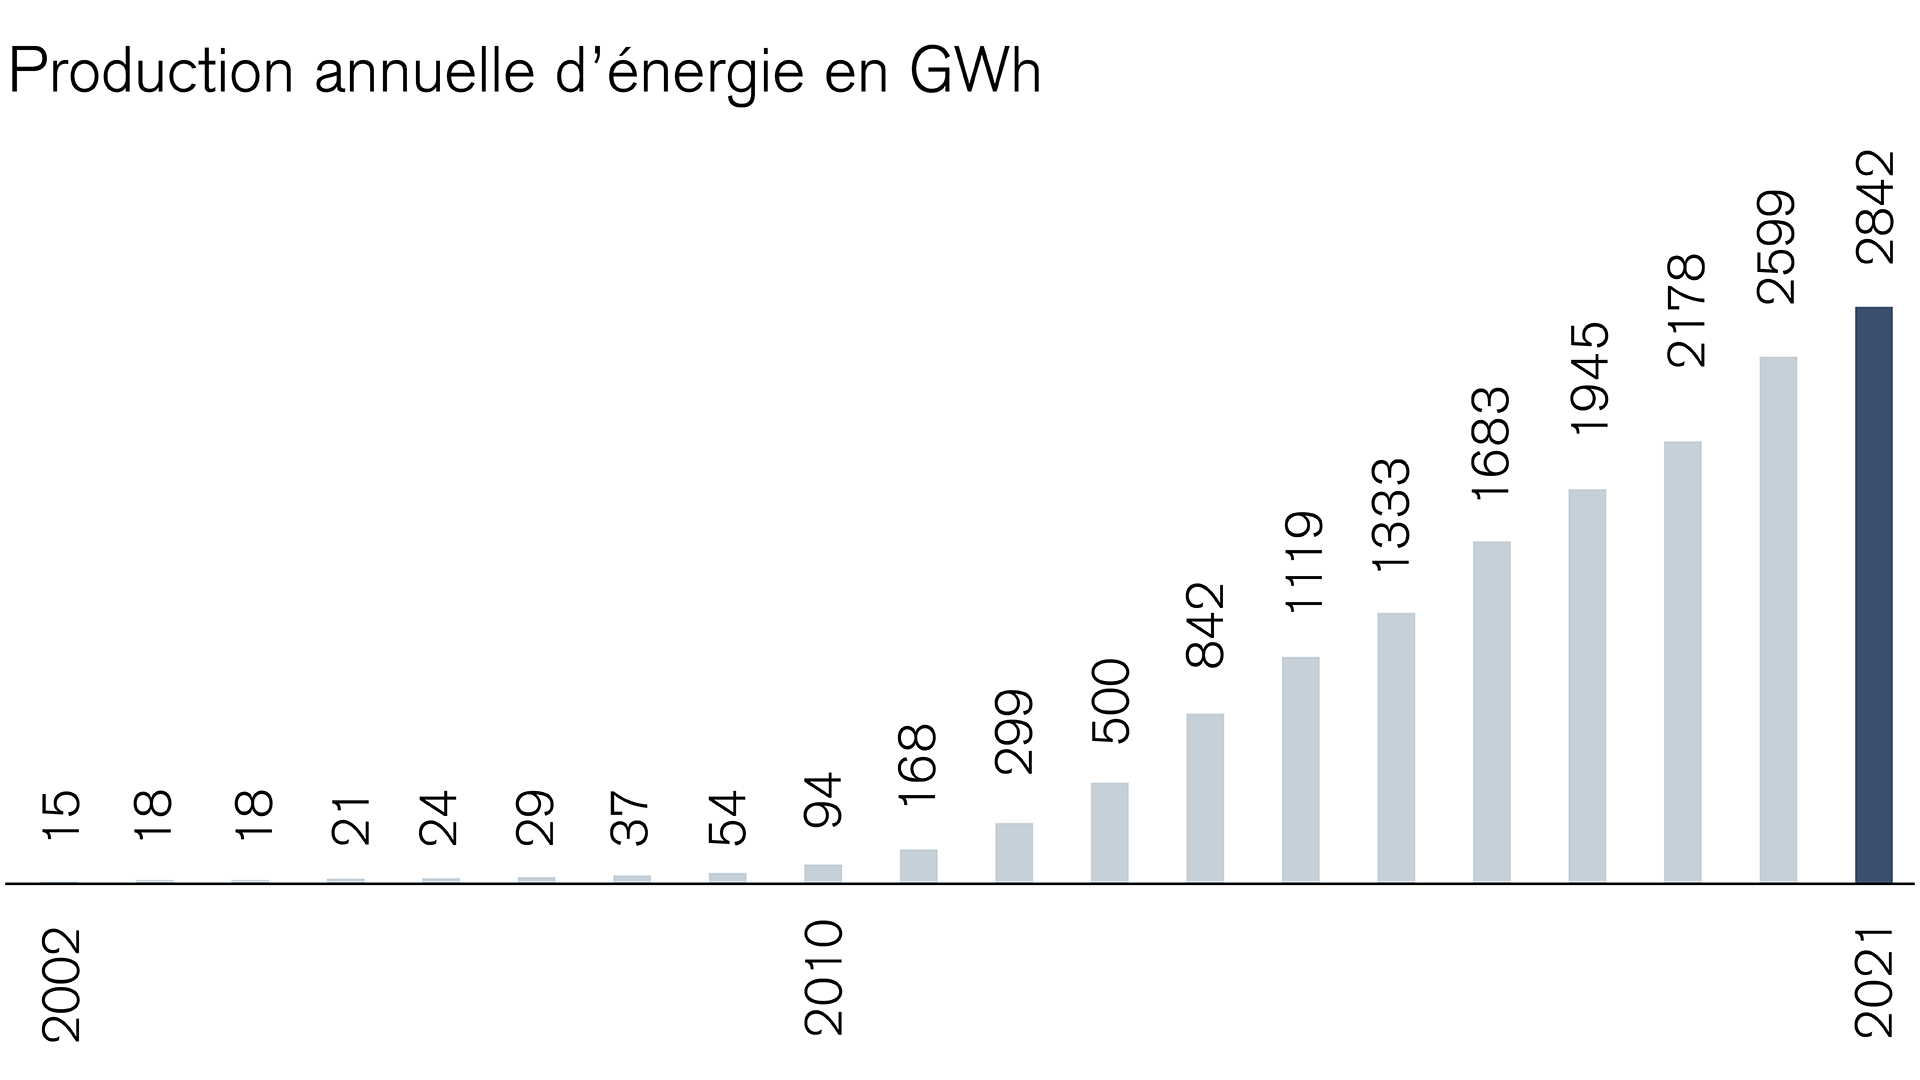 Électricité solaire: augmentation de la production annuelle d’énergie en GWh